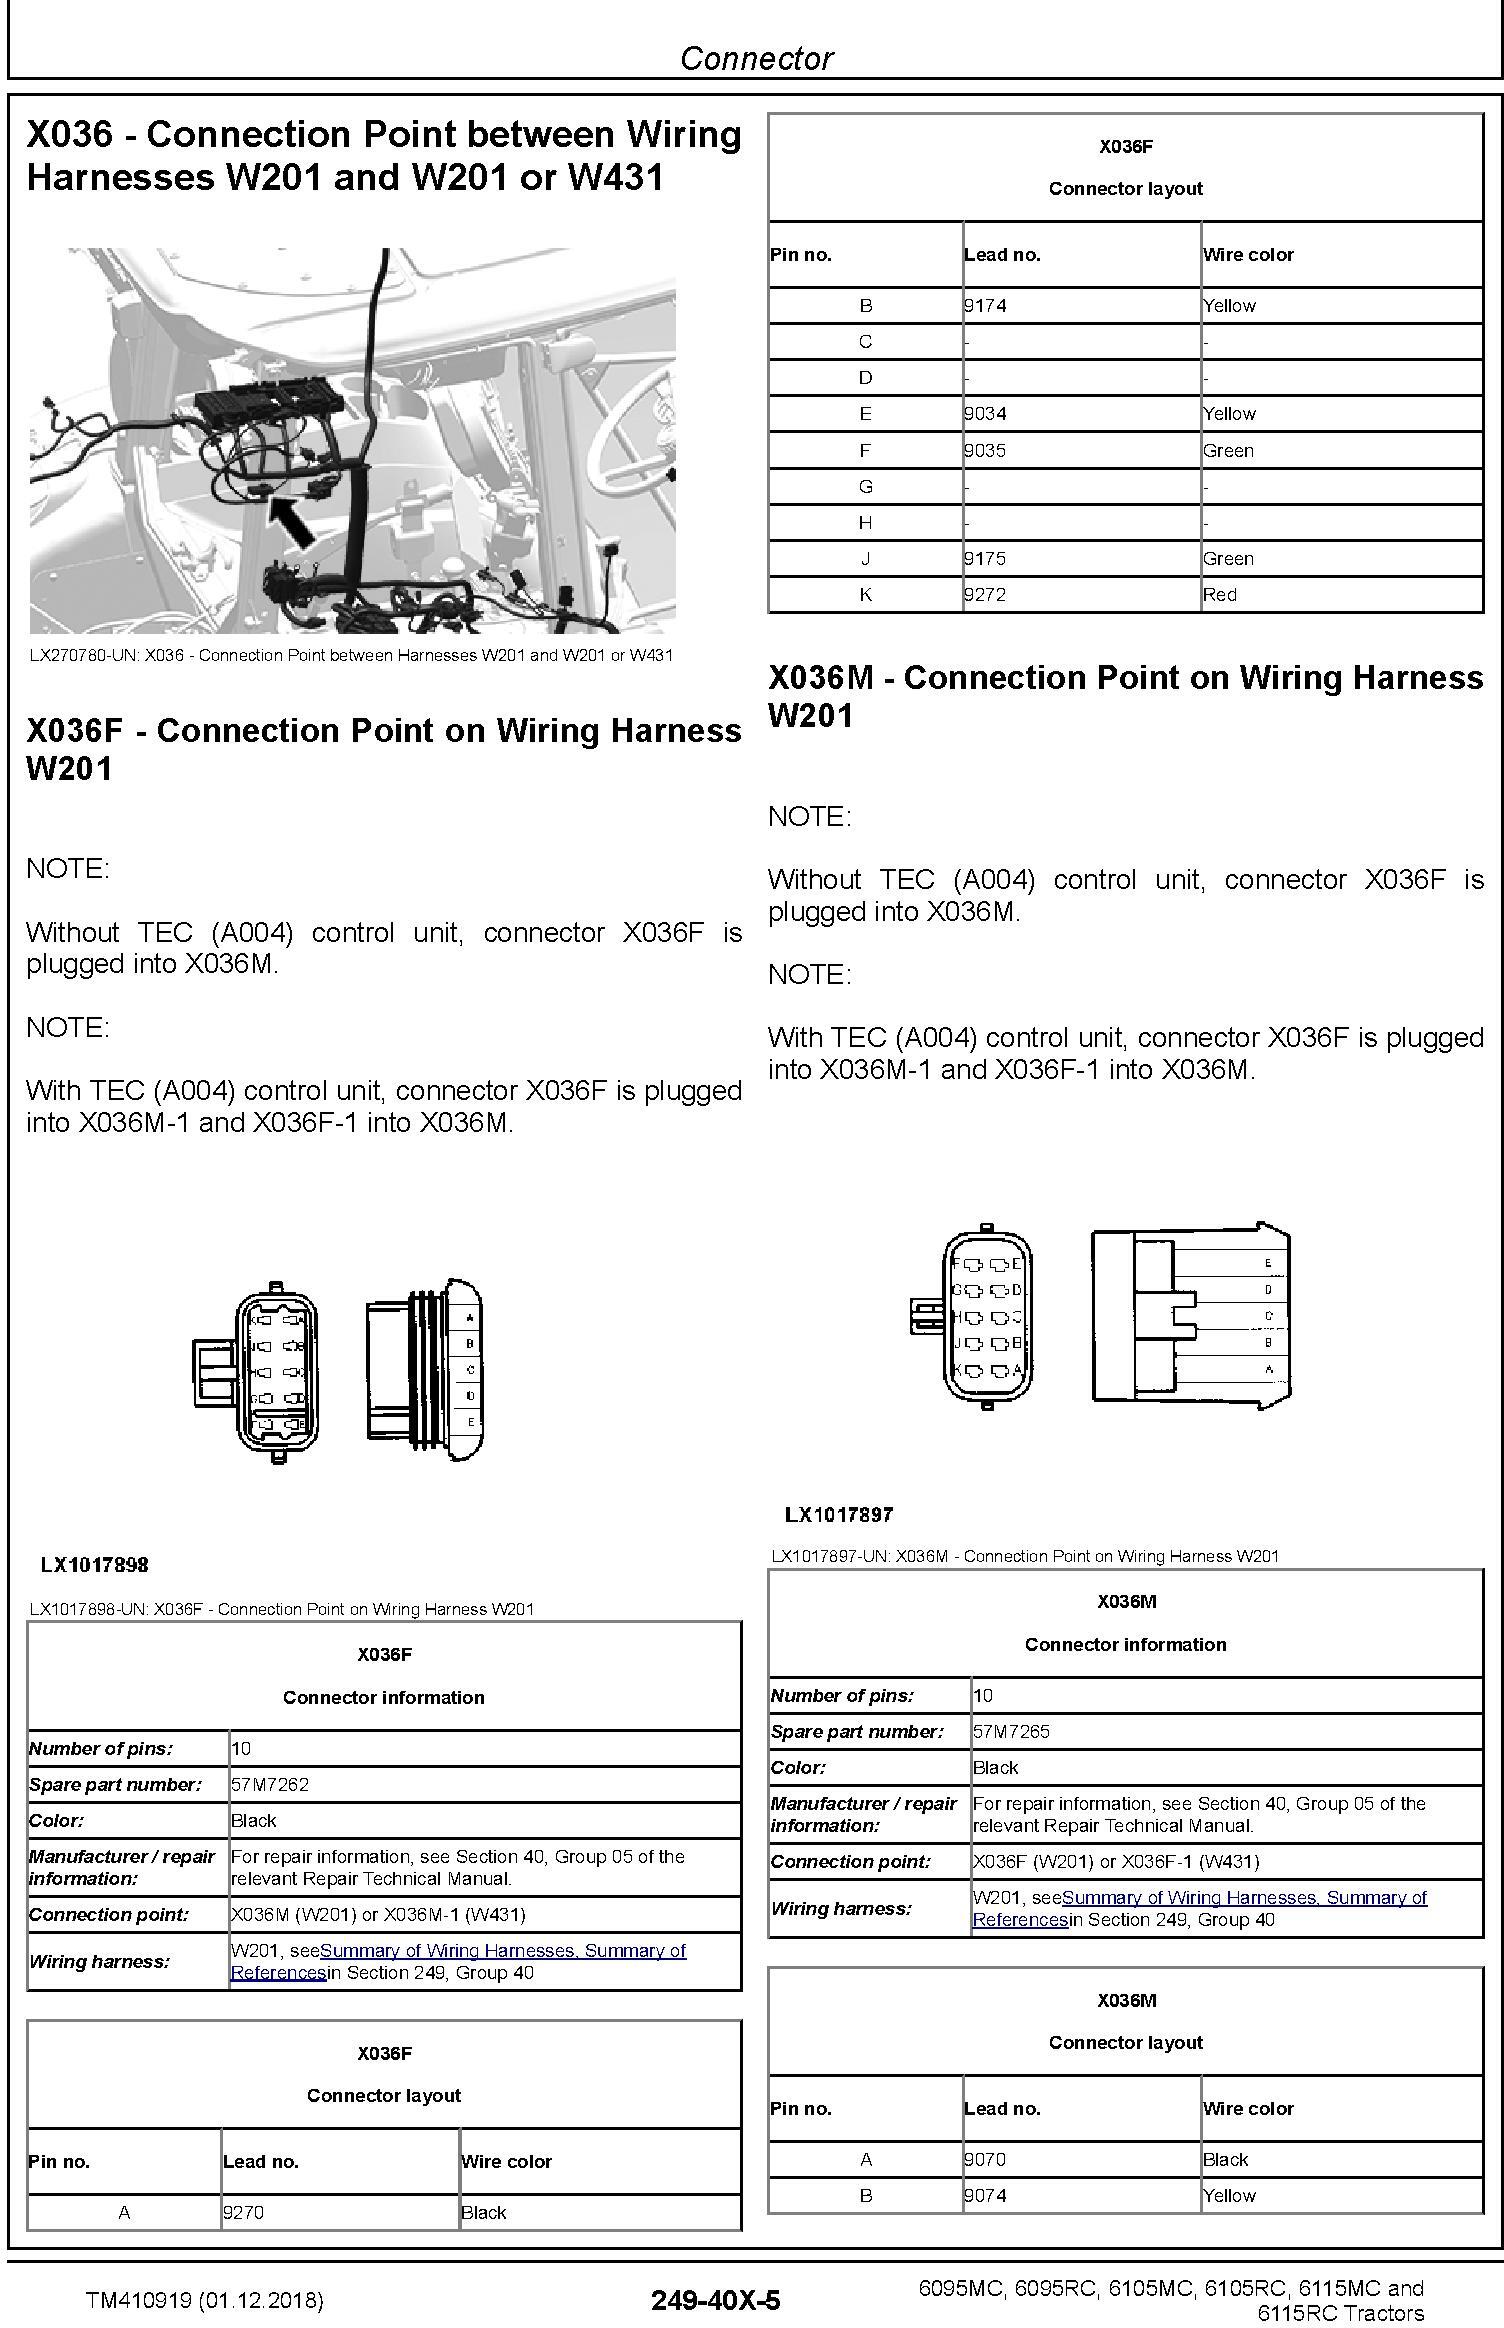 John Deere 6095MC 6095RC 6105MC 6105RC 6115MC 6115RC Tractors Diagnostic Technical Manual (TM410919) - 2